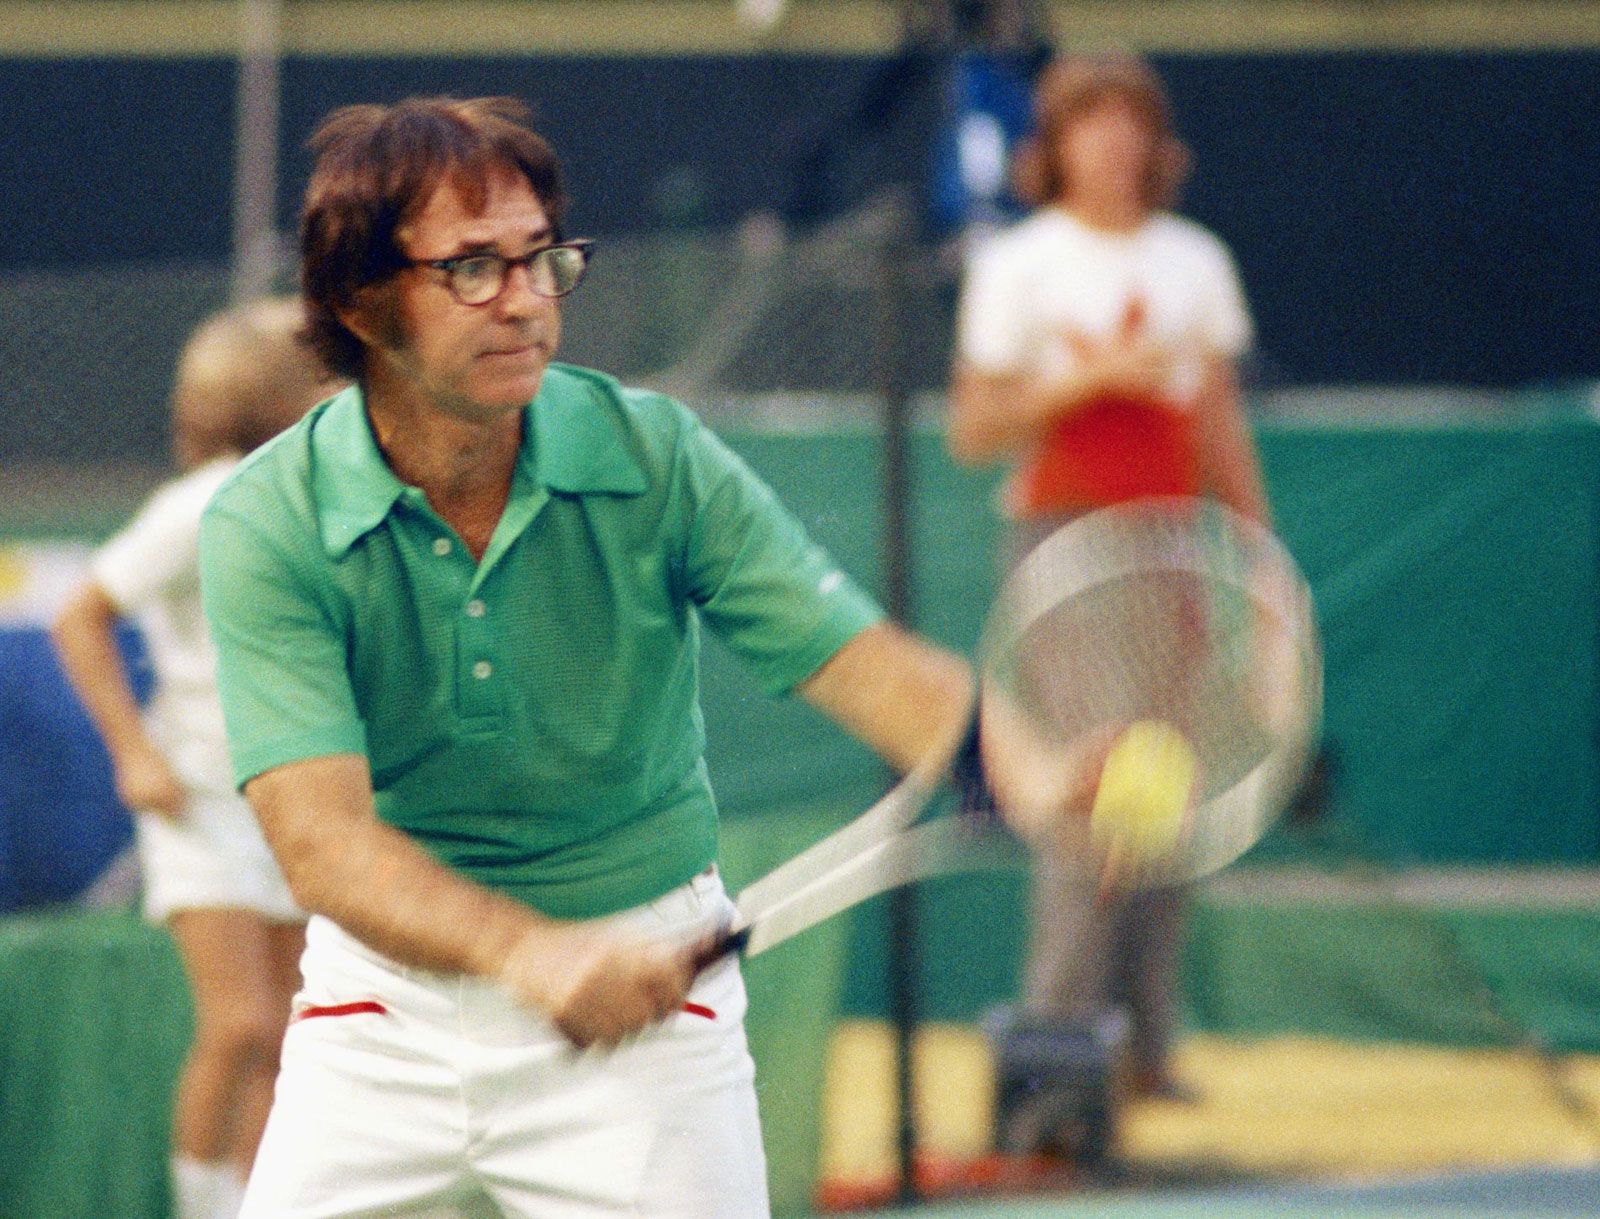 Bobby-Riggs-tennis-match-Battle-of-the-September-20-1973.jpg